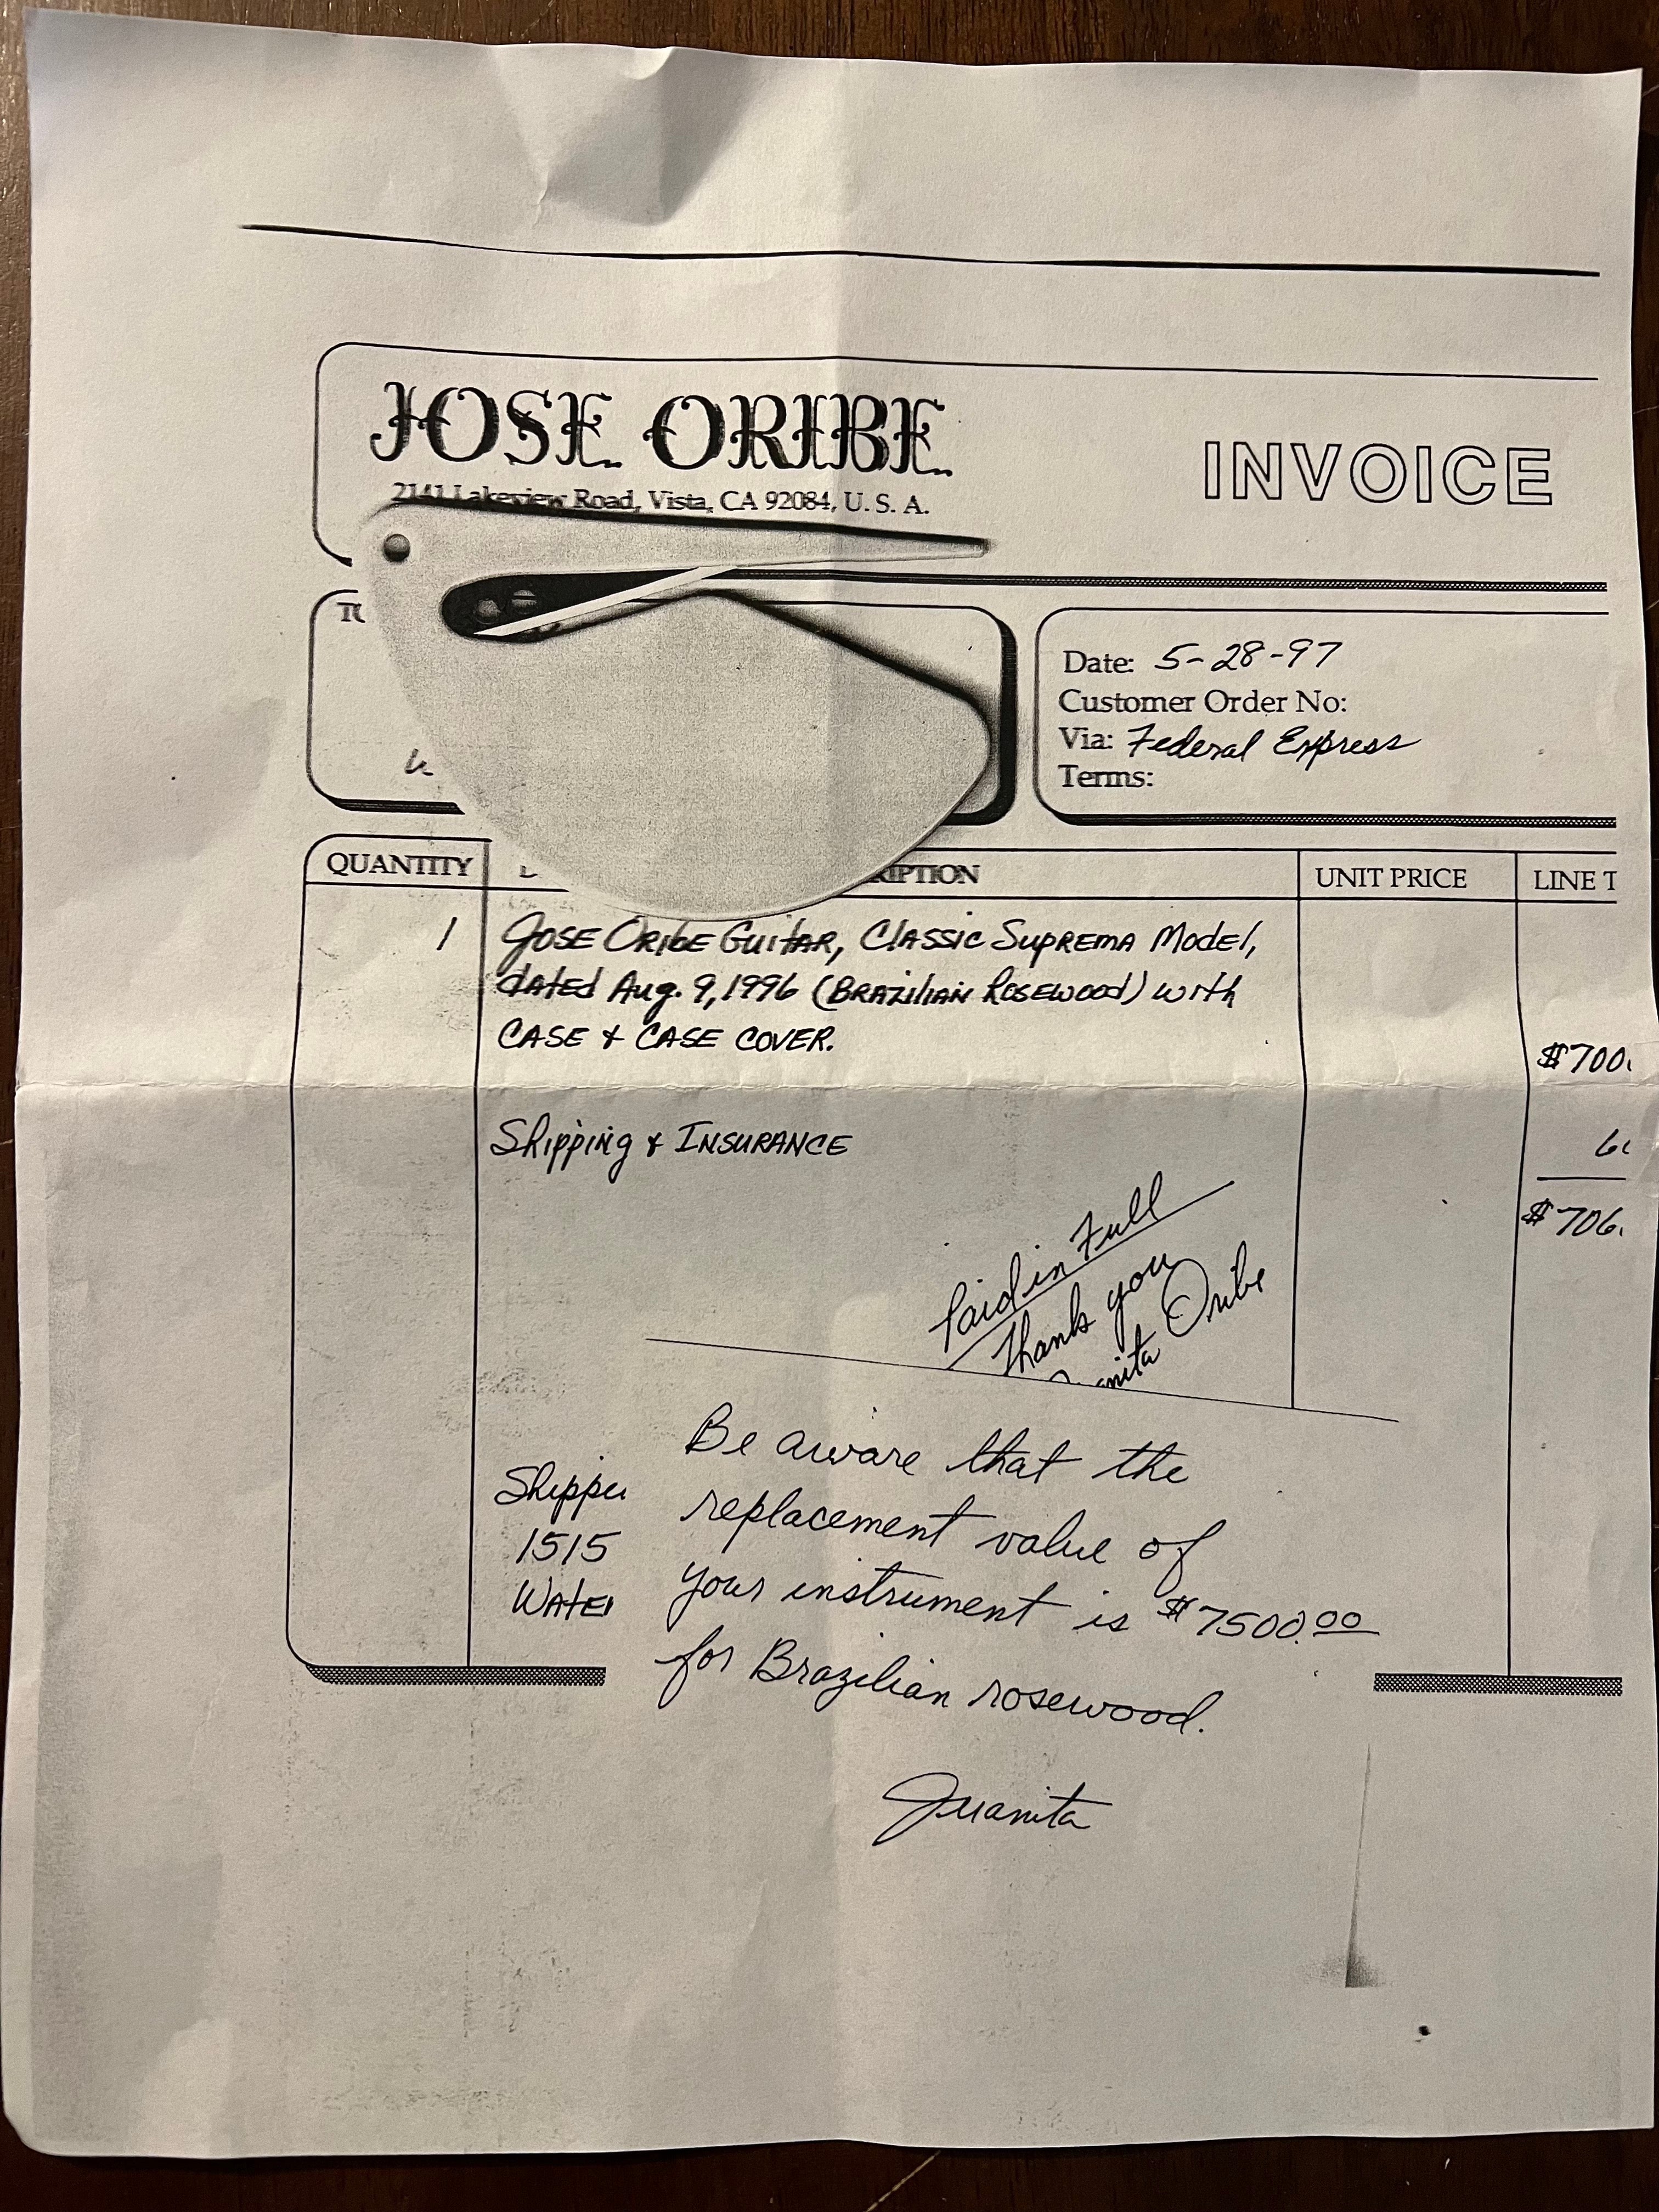 Jose Oribe 1996 "Classic Suprema" Classical